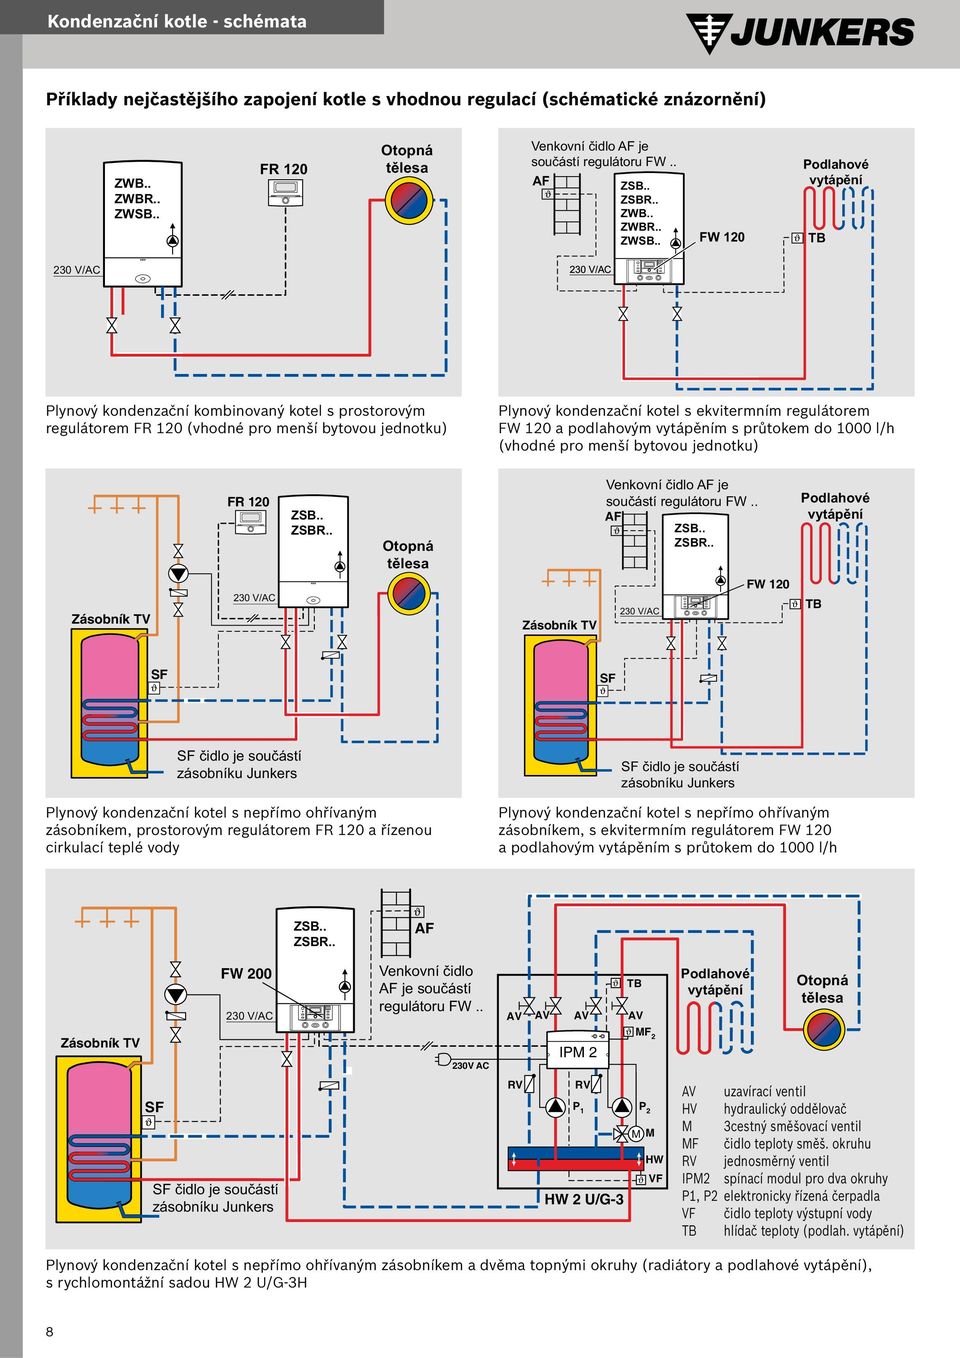 . FW 120 Podlahové vytápění TB 230 V/AC 230 V/AC Plynový kondenzační kombinovaný kotel s prostorovým regulátorem FR 120 (vhodné pro menší bytovou jednotku) Plynový kondenzační kotel s ekvitermním